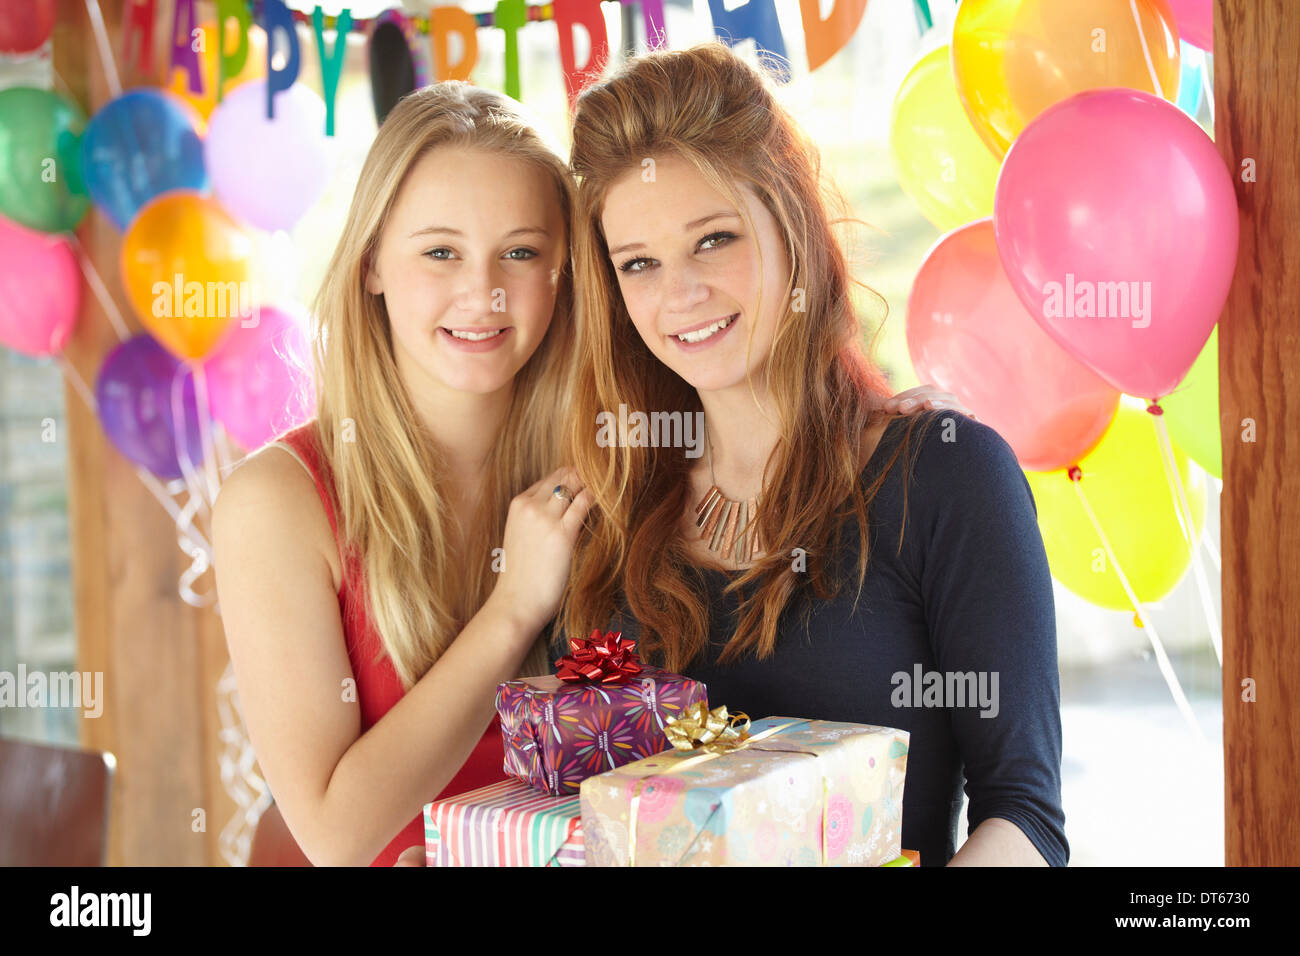 Dos chicas adolescentes compartiendo regalos en la fiesta de cumpleaños Foto de stock